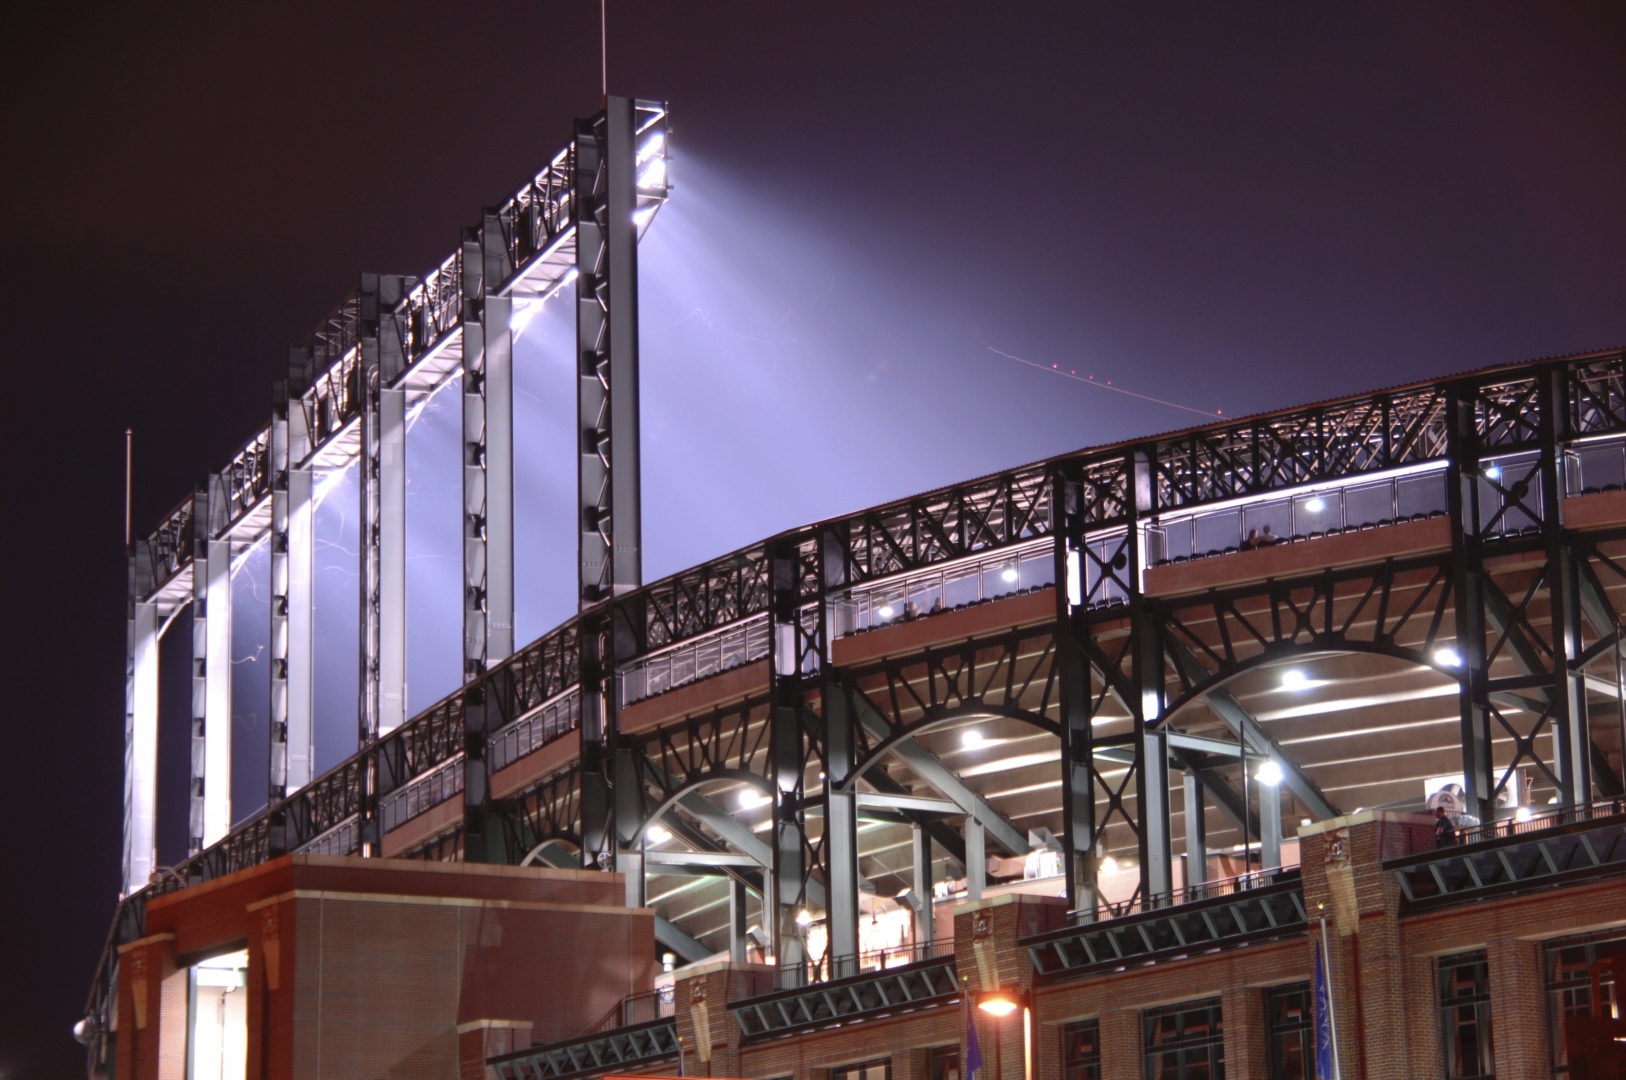 outdoor stadium lights at night